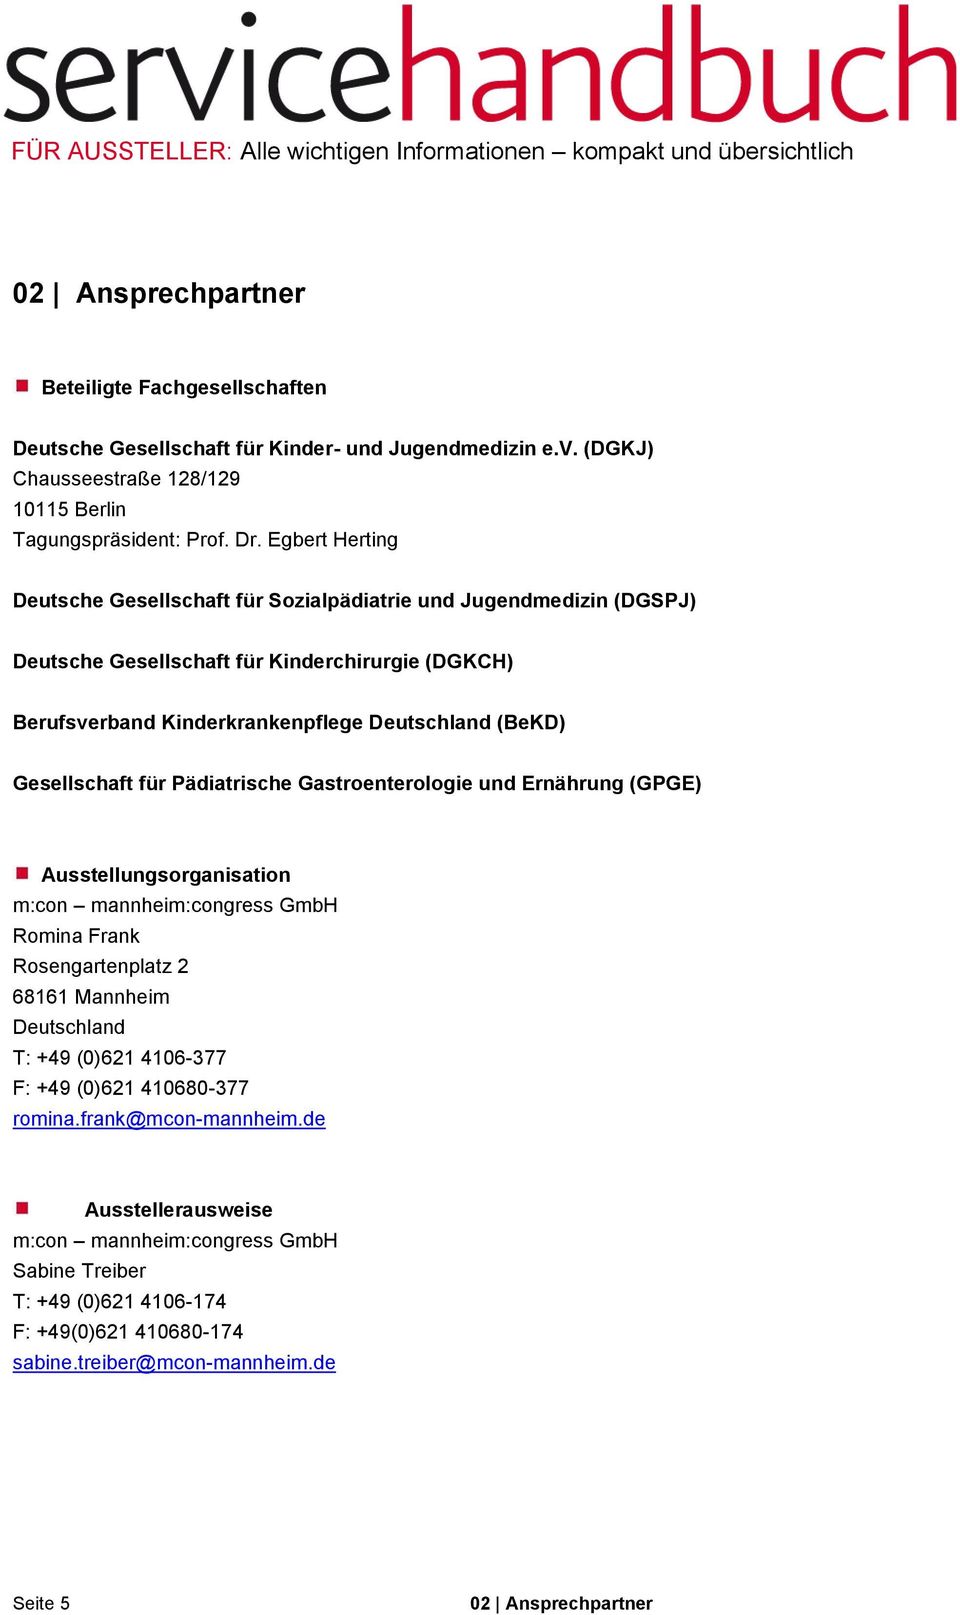 Gesellschaft für Pädiatrische Gastroenterologie und Ernährung (GPGE) Ausstellungsorganisation m:con mannheim:congress GmbH Romina Frank Rosengartenplatz 2 68161 Mannheim Deutschland T: +49 (0)621